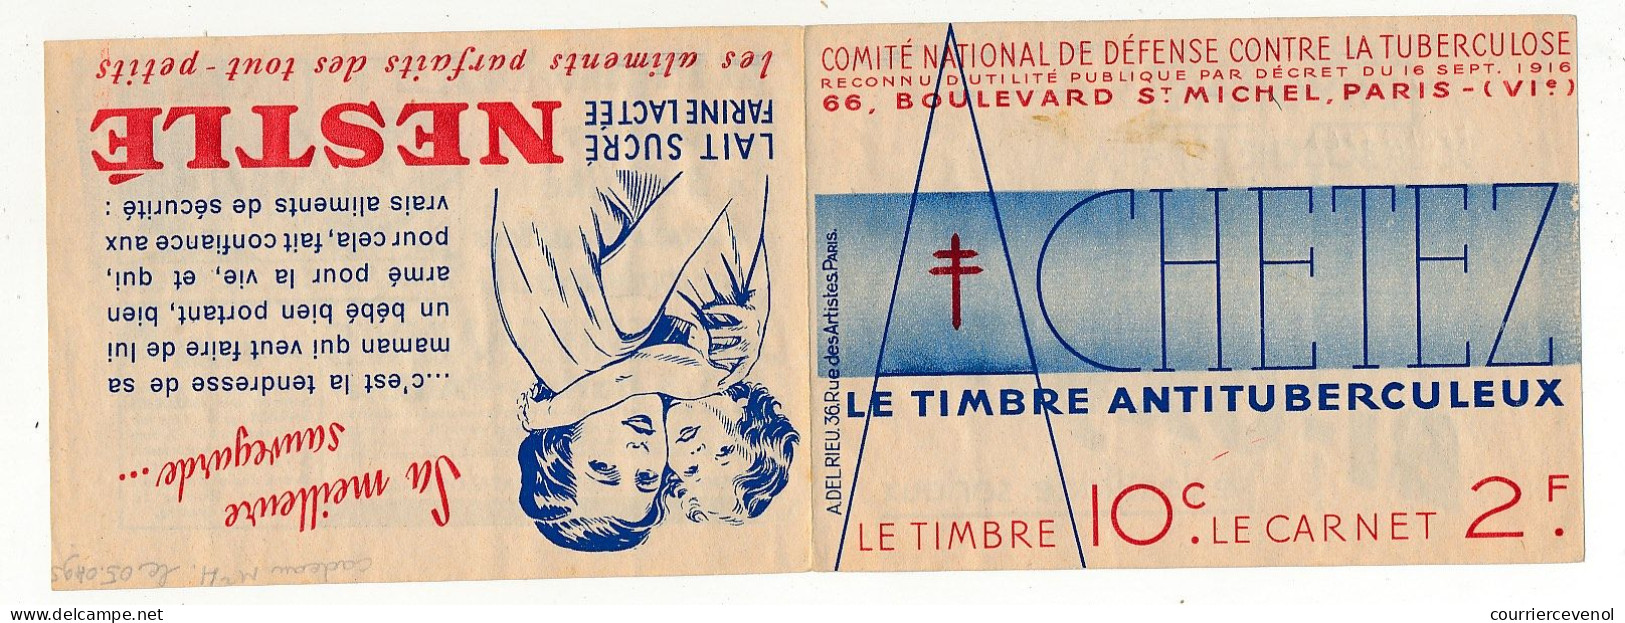 Carnet Anti-tuberculeux 1935 - 2 Fr - 20 Timbres à 10c (16 à L'intérieur) - Pubs  Cacao Suchard - Déjeuner Heudebert - Blocs & Carnets